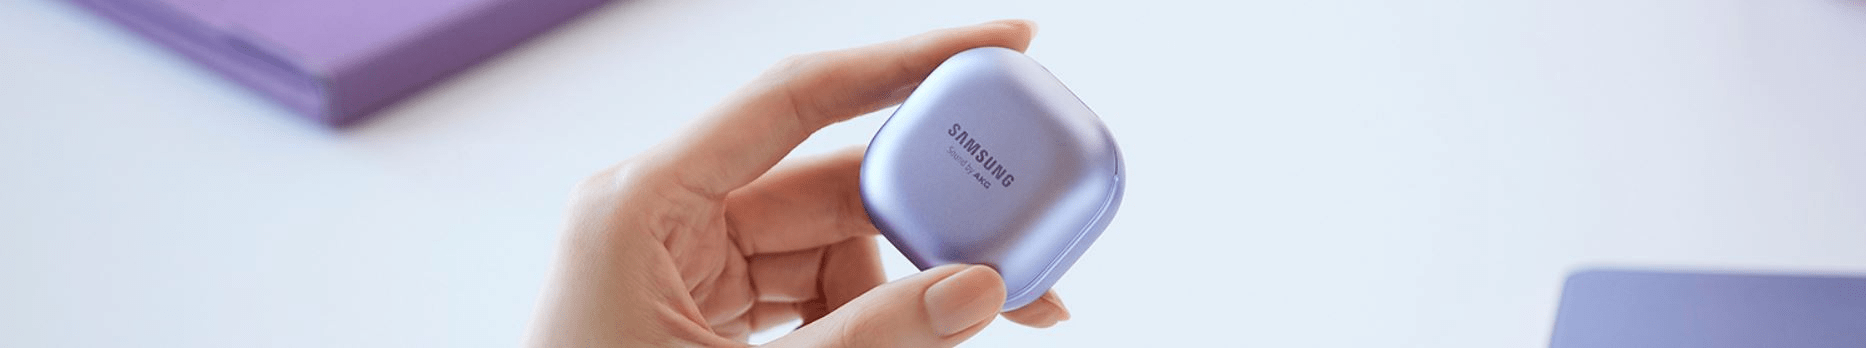 Eredeti vezeték nélküli Bluetooth fejhallgató Samsung Galaxy Buds az ANC zajcsökkentéshez 99% -os környezeti zajcsökkentés automatikus környezeti váltás beszéd közben nem szükséges kihúzni a fejhallgatót Kétirányú hangszórók nagyobb meghajtó 11mm-es mélynyomóval és 6,5 mm-es magassugárzóval az AKG zajmentes hívásaiból 360 fokos hang a dolby fejkövető technológiának köszönhetően automatikus váltás a zene és a hangforrások között hangvezérlés Bixby smartthings alkalmazás a fejhallgató megtalálásához zenét megosztva egy baráttal szellőzőnyílásokkal egyensúlyozva a fülben lévő nyomást 5 óra kitartás további 13 esetet ad hozzá teljes állóképesség 18 óra kikapcsolva 8 óra 20 hozzáad egy tokot 5 perc gyorstöltéssel, az ipx7 30 percig tart 1 m vízben